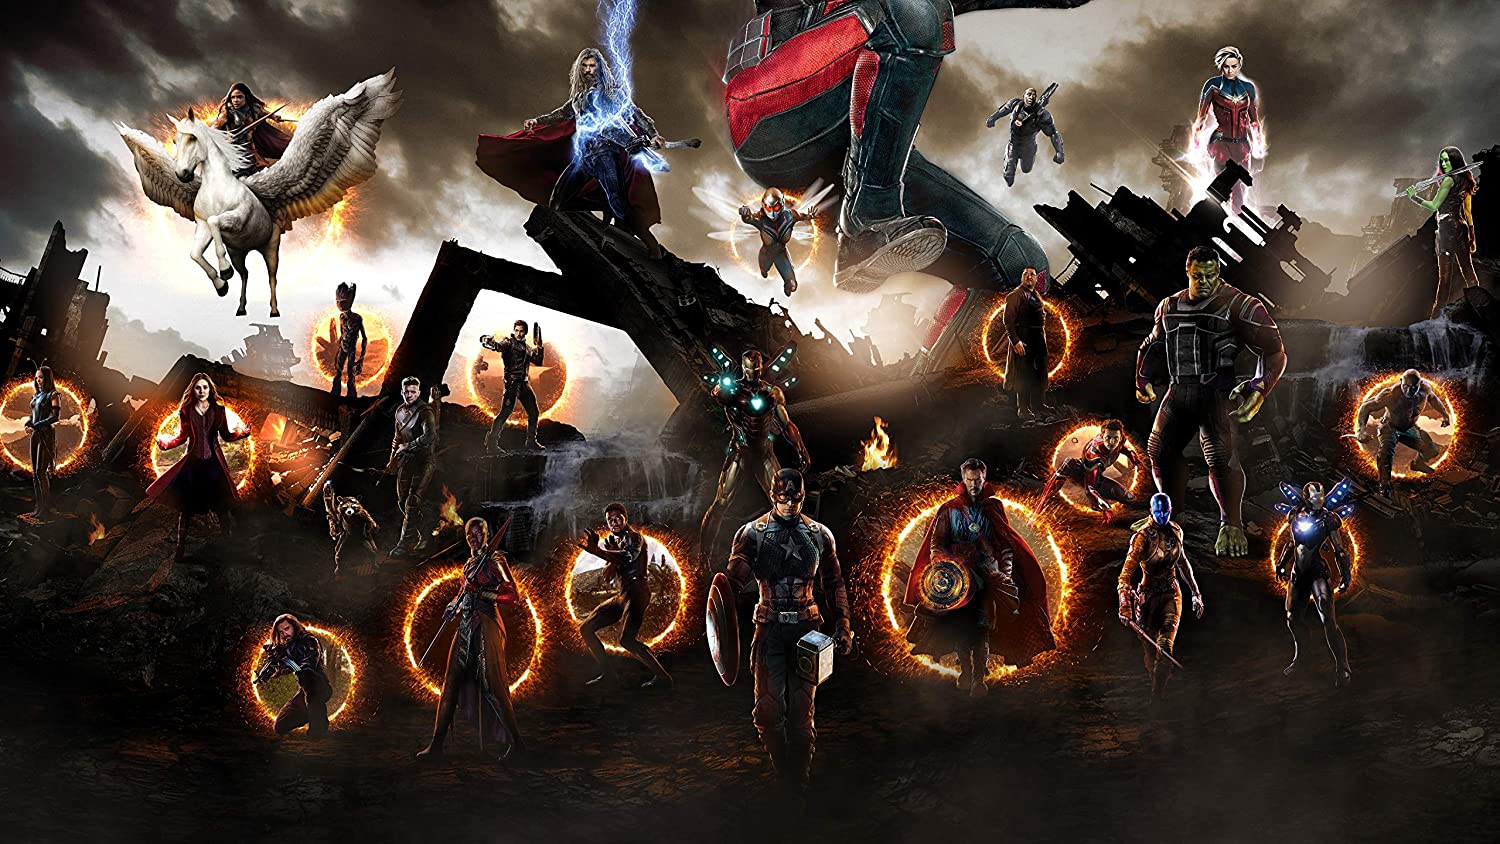 Avengers Endgame Poster, Final Battle Wallpaper, Marvel Movie Print, Captain America Poster, Doctor Strange Caracter Wall Art Decor, Handmade Products